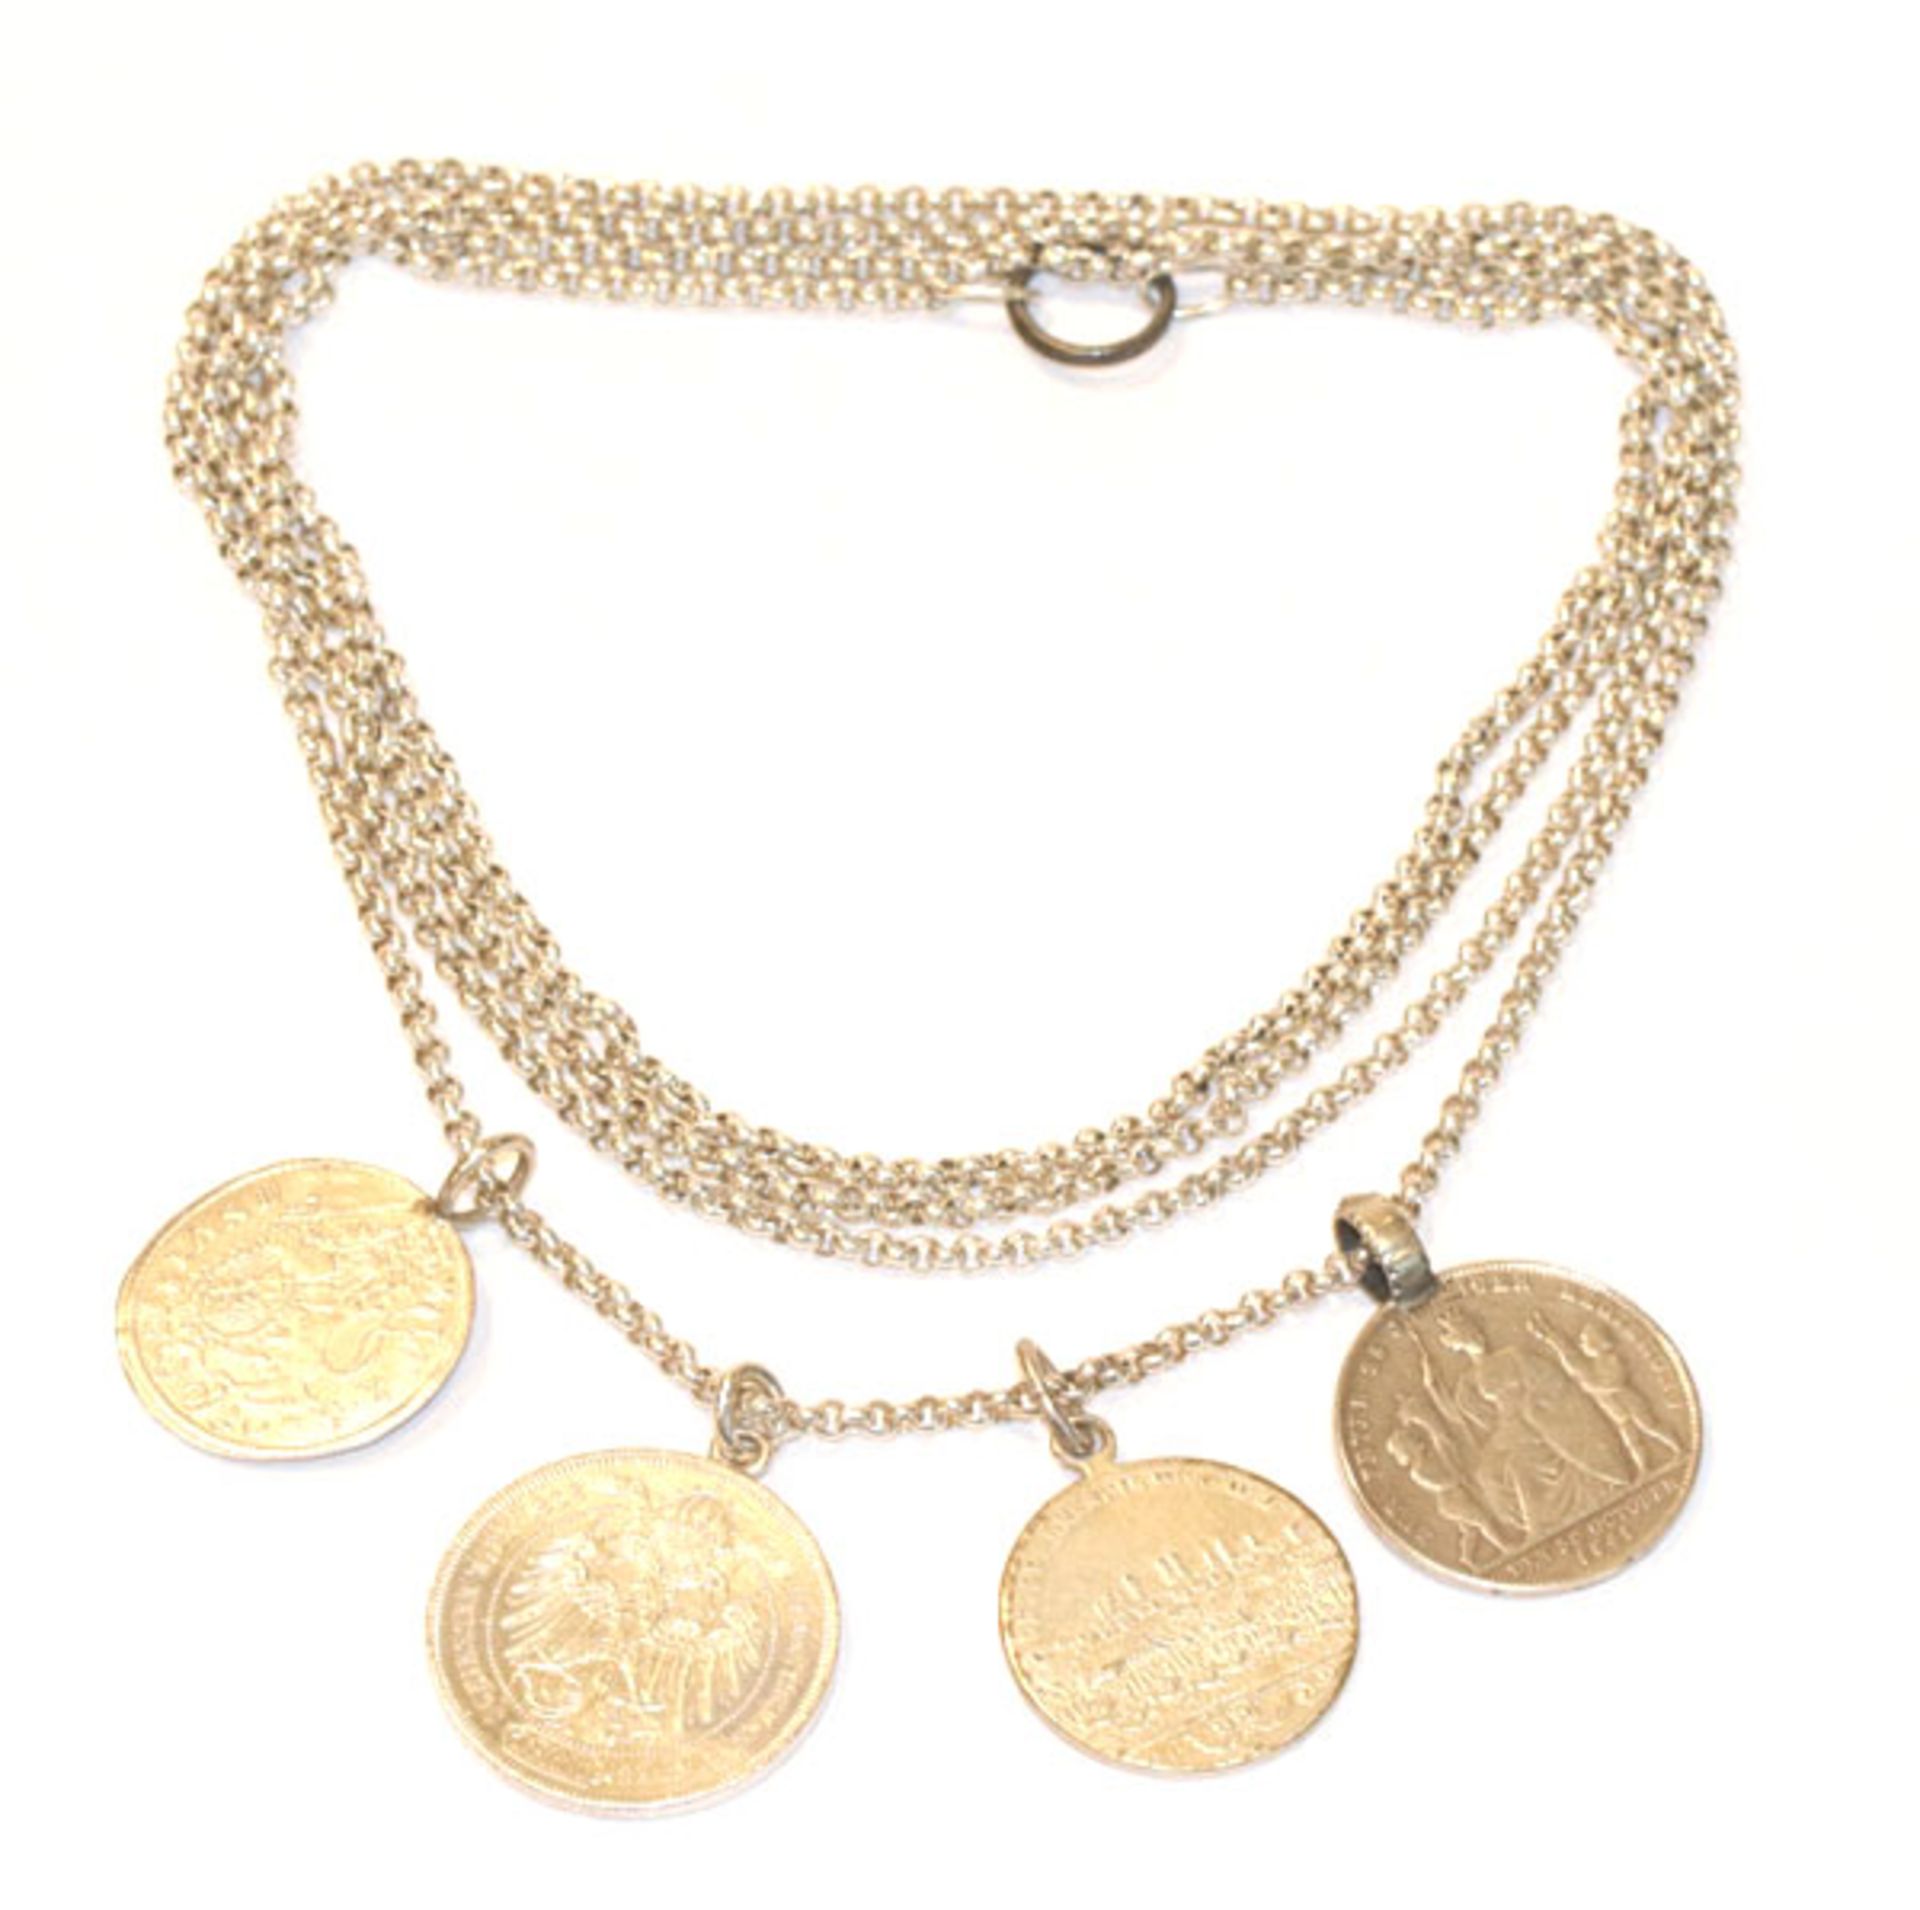 Silber Schnürkette, L 160 cm, mit Medaillen/Münzen Anhänger, 96 gr.